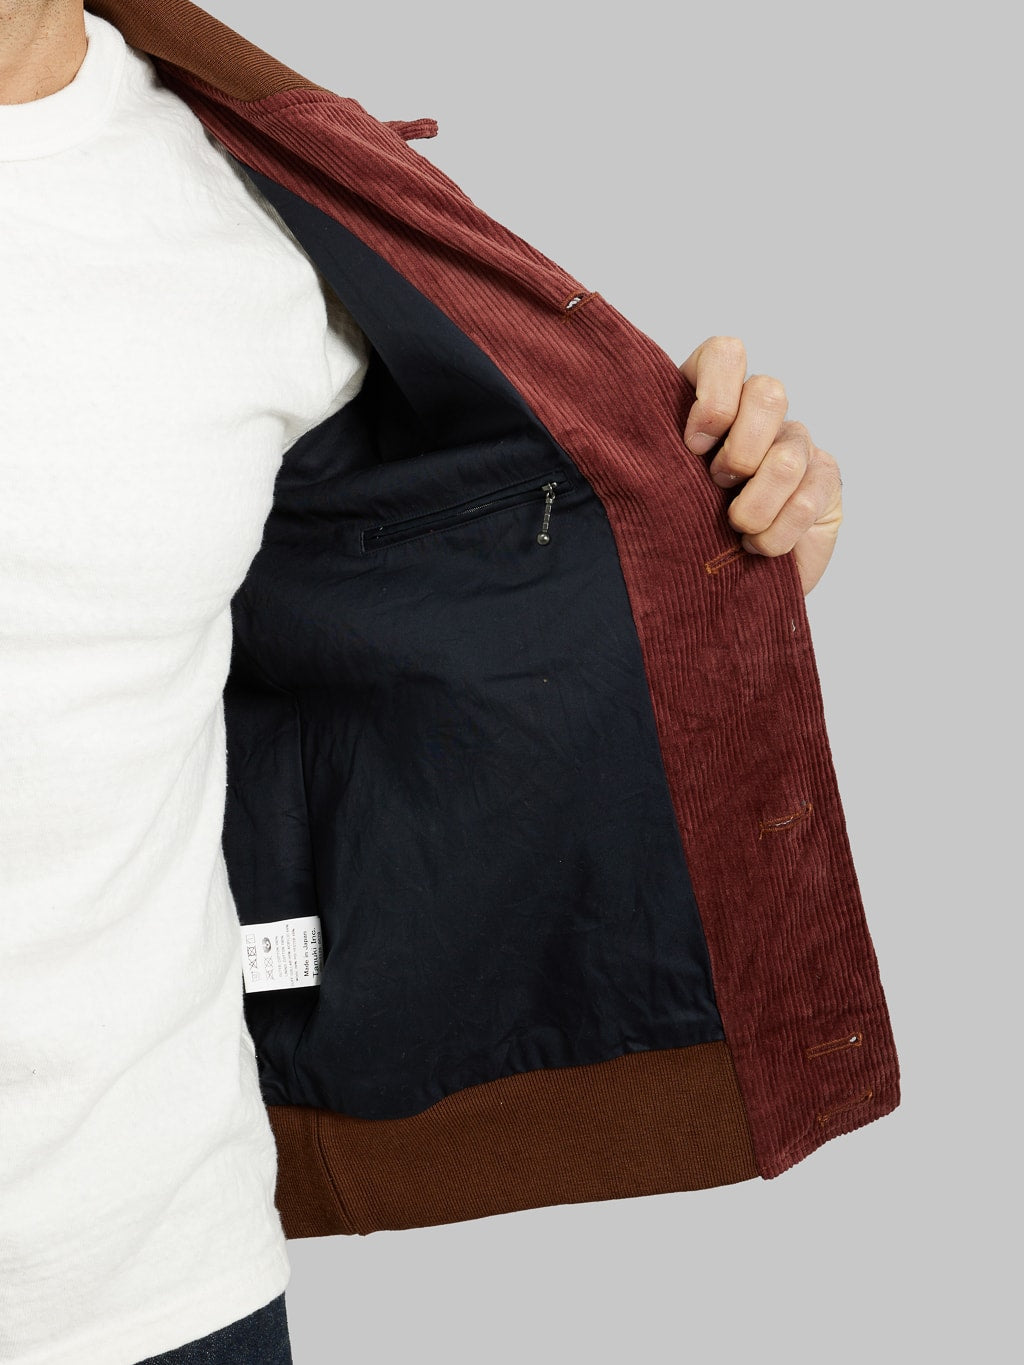 Tanuki Sazanami Corduro mud Dyed brown Jacket zipper inner pocket